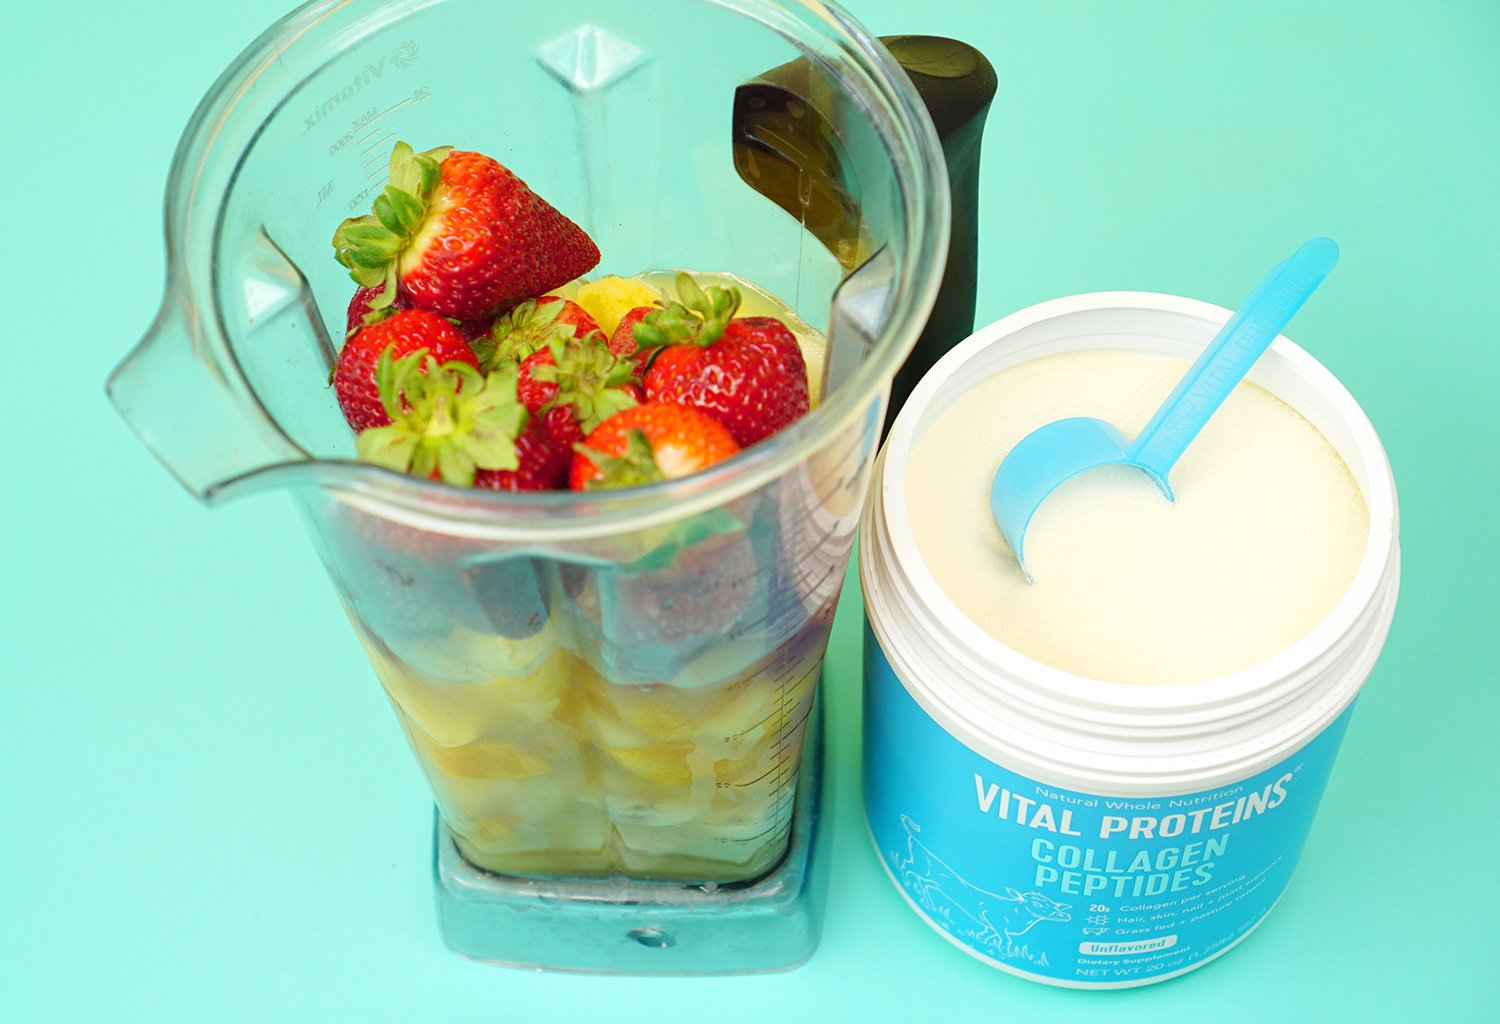 vital proteins in tropical fruit smoothie blender ingredients